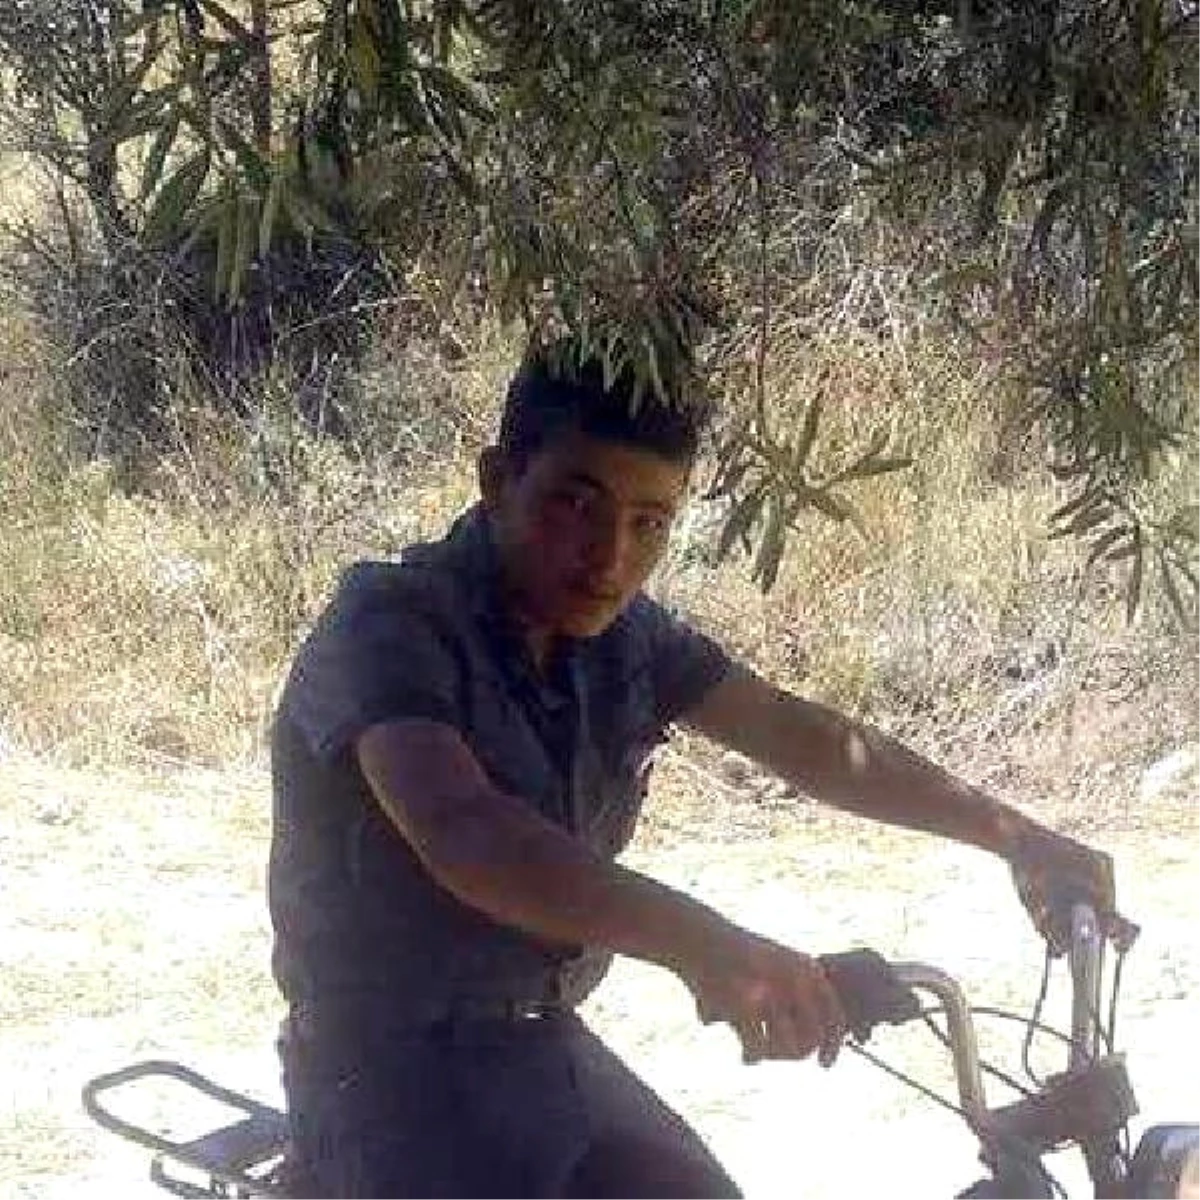 Motosikletiyle Bahçe Duvarına Çarpan Genç Yaralandı